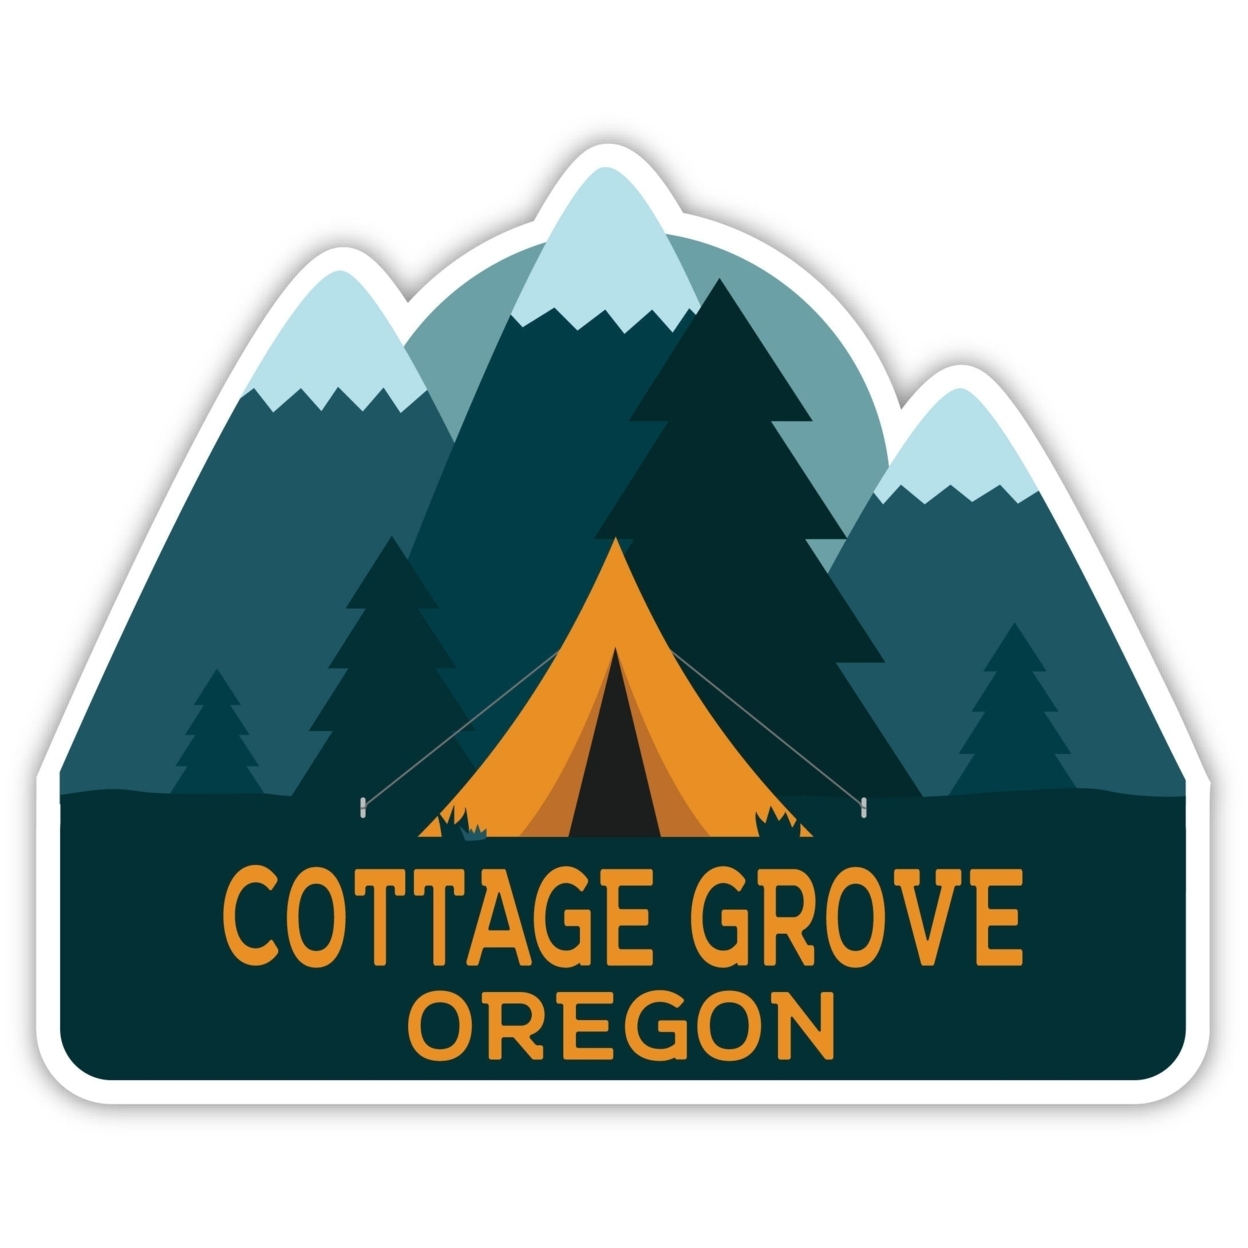 Cottage Grove Oregon Souvenir Decorative Stickers (Choose Theme And Size) - Single Unit, 2-Inch, Tent